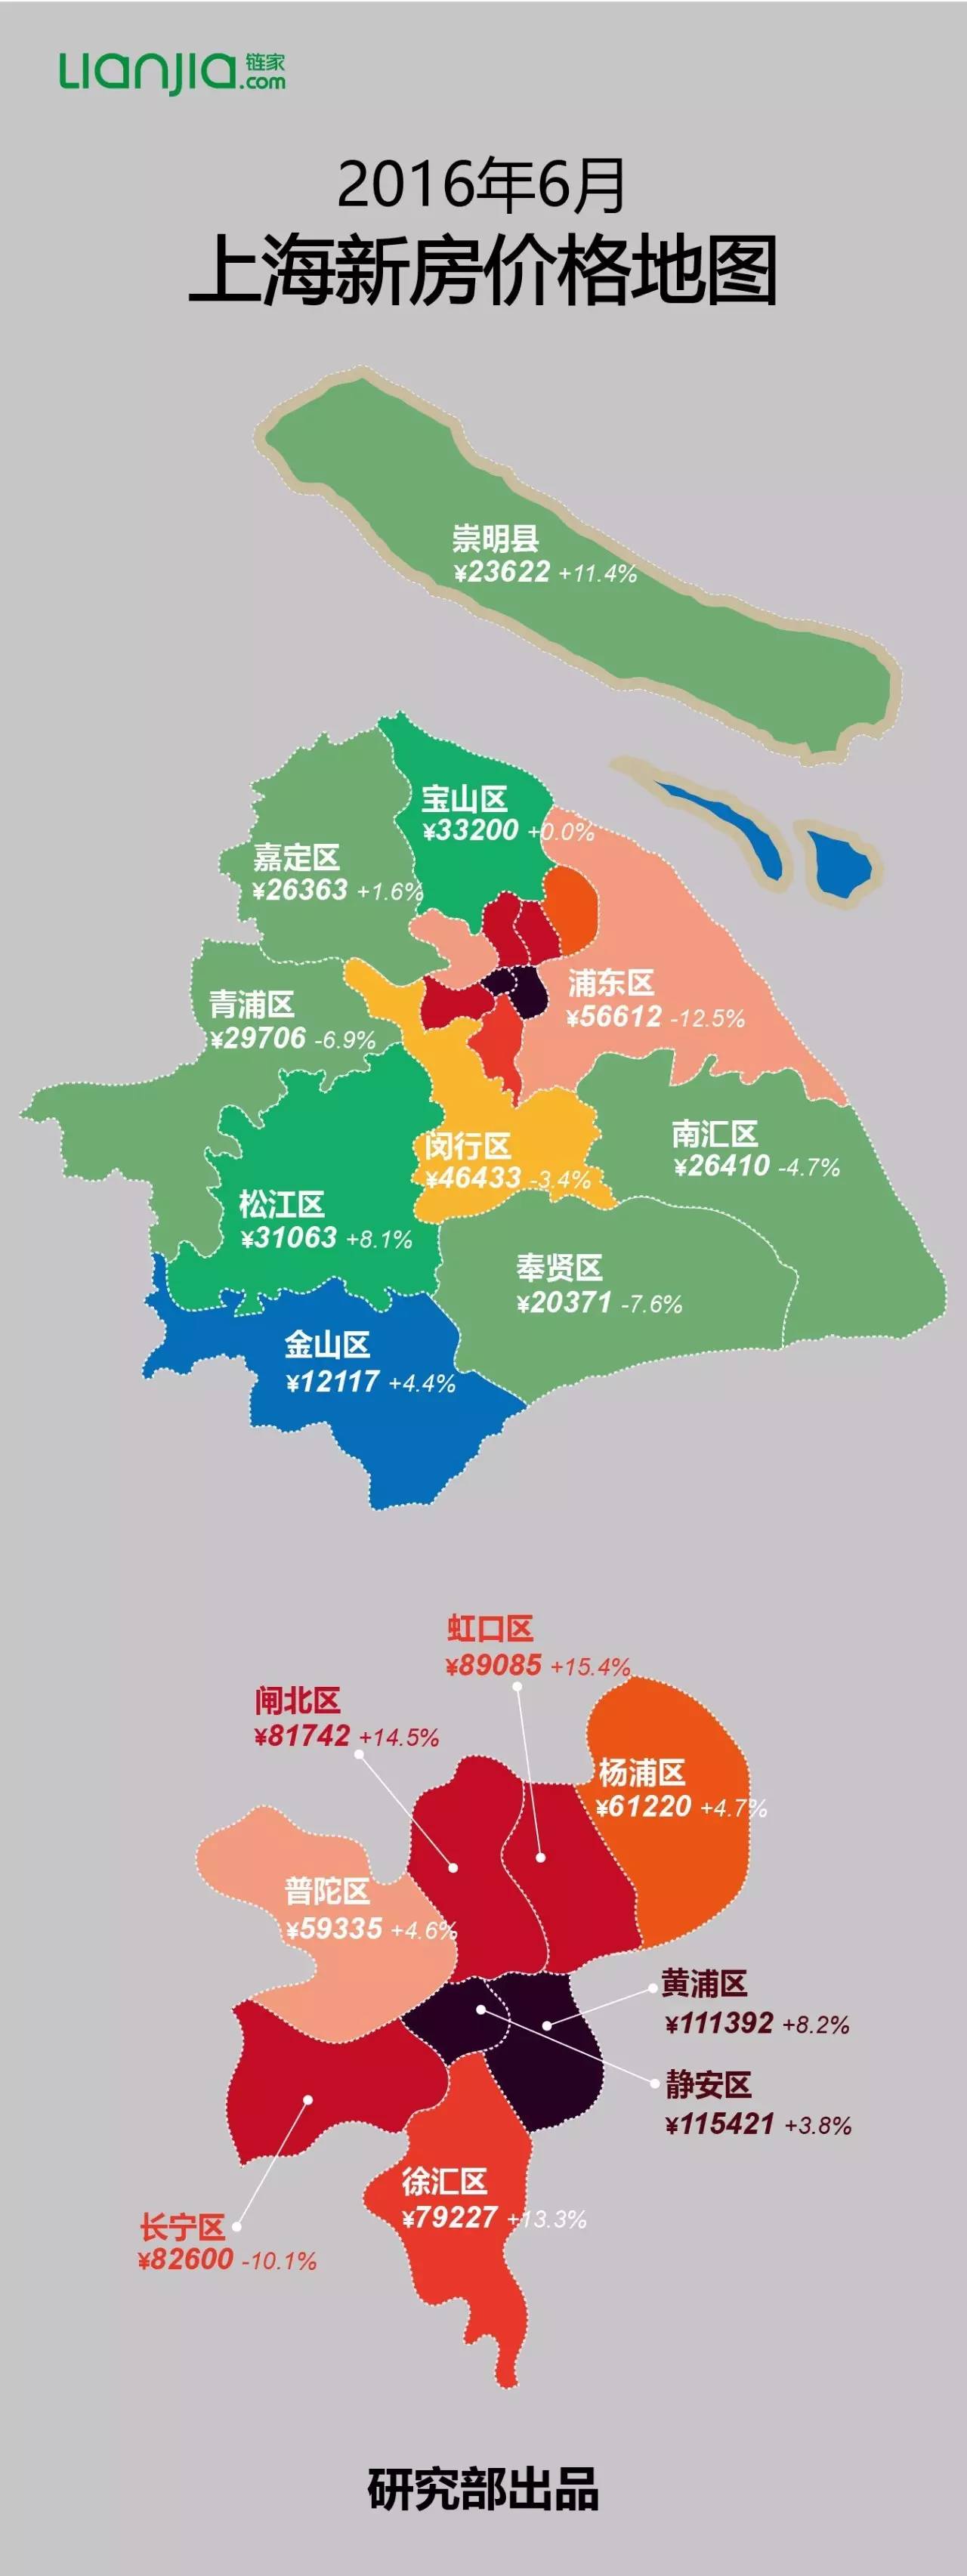 6月上海最新房价地图出炉,看看哪些区域跌了!